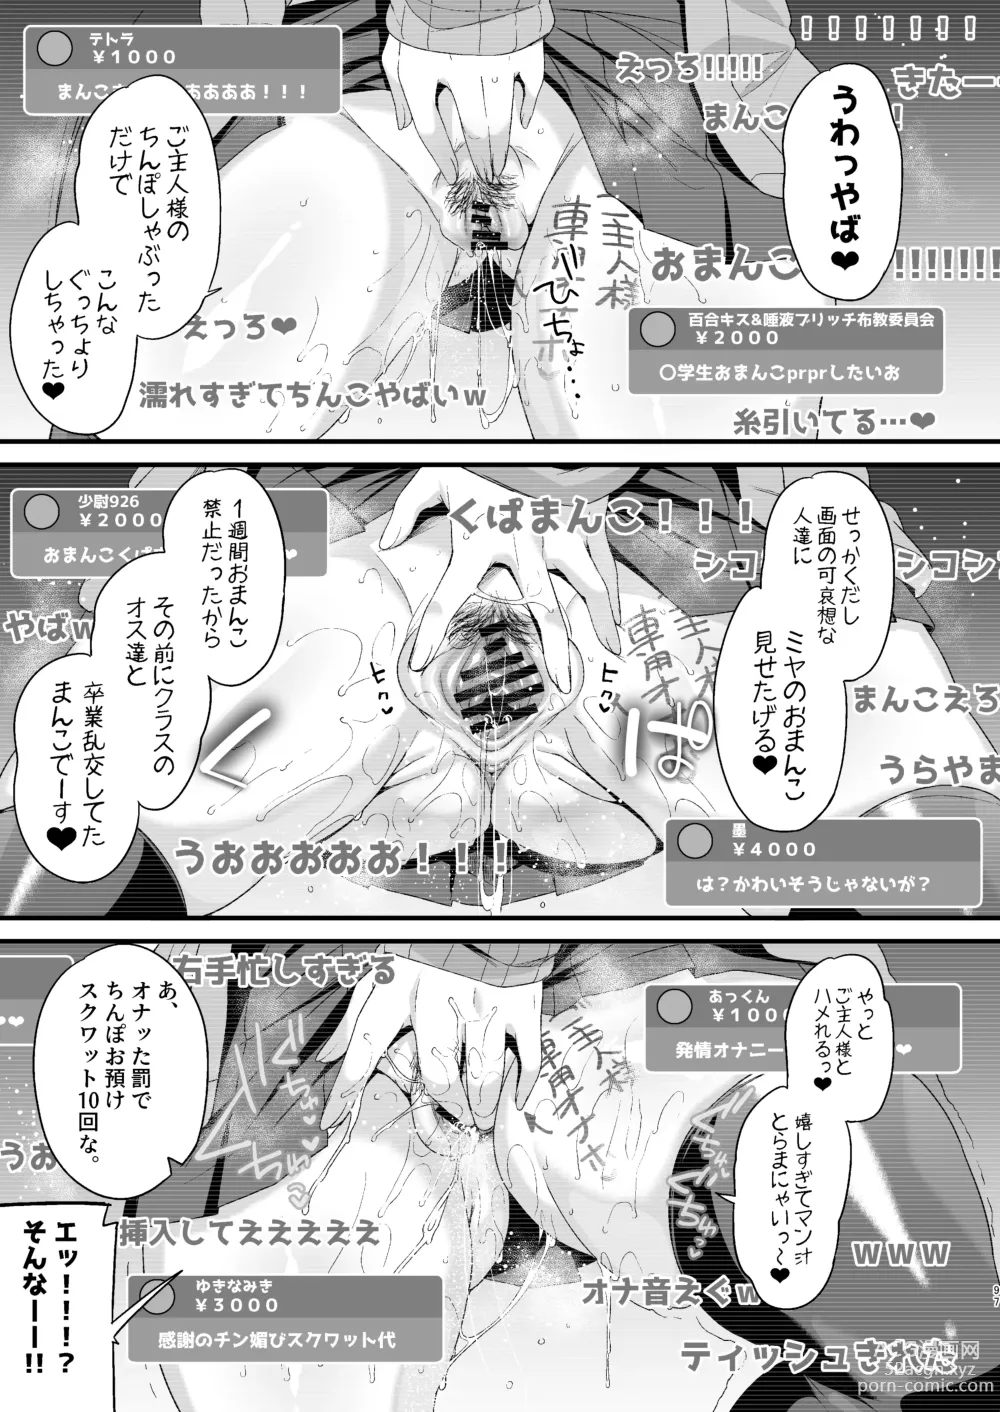 Page 96 of doujinshi Miya-chan 1-nen Choukyou Ge